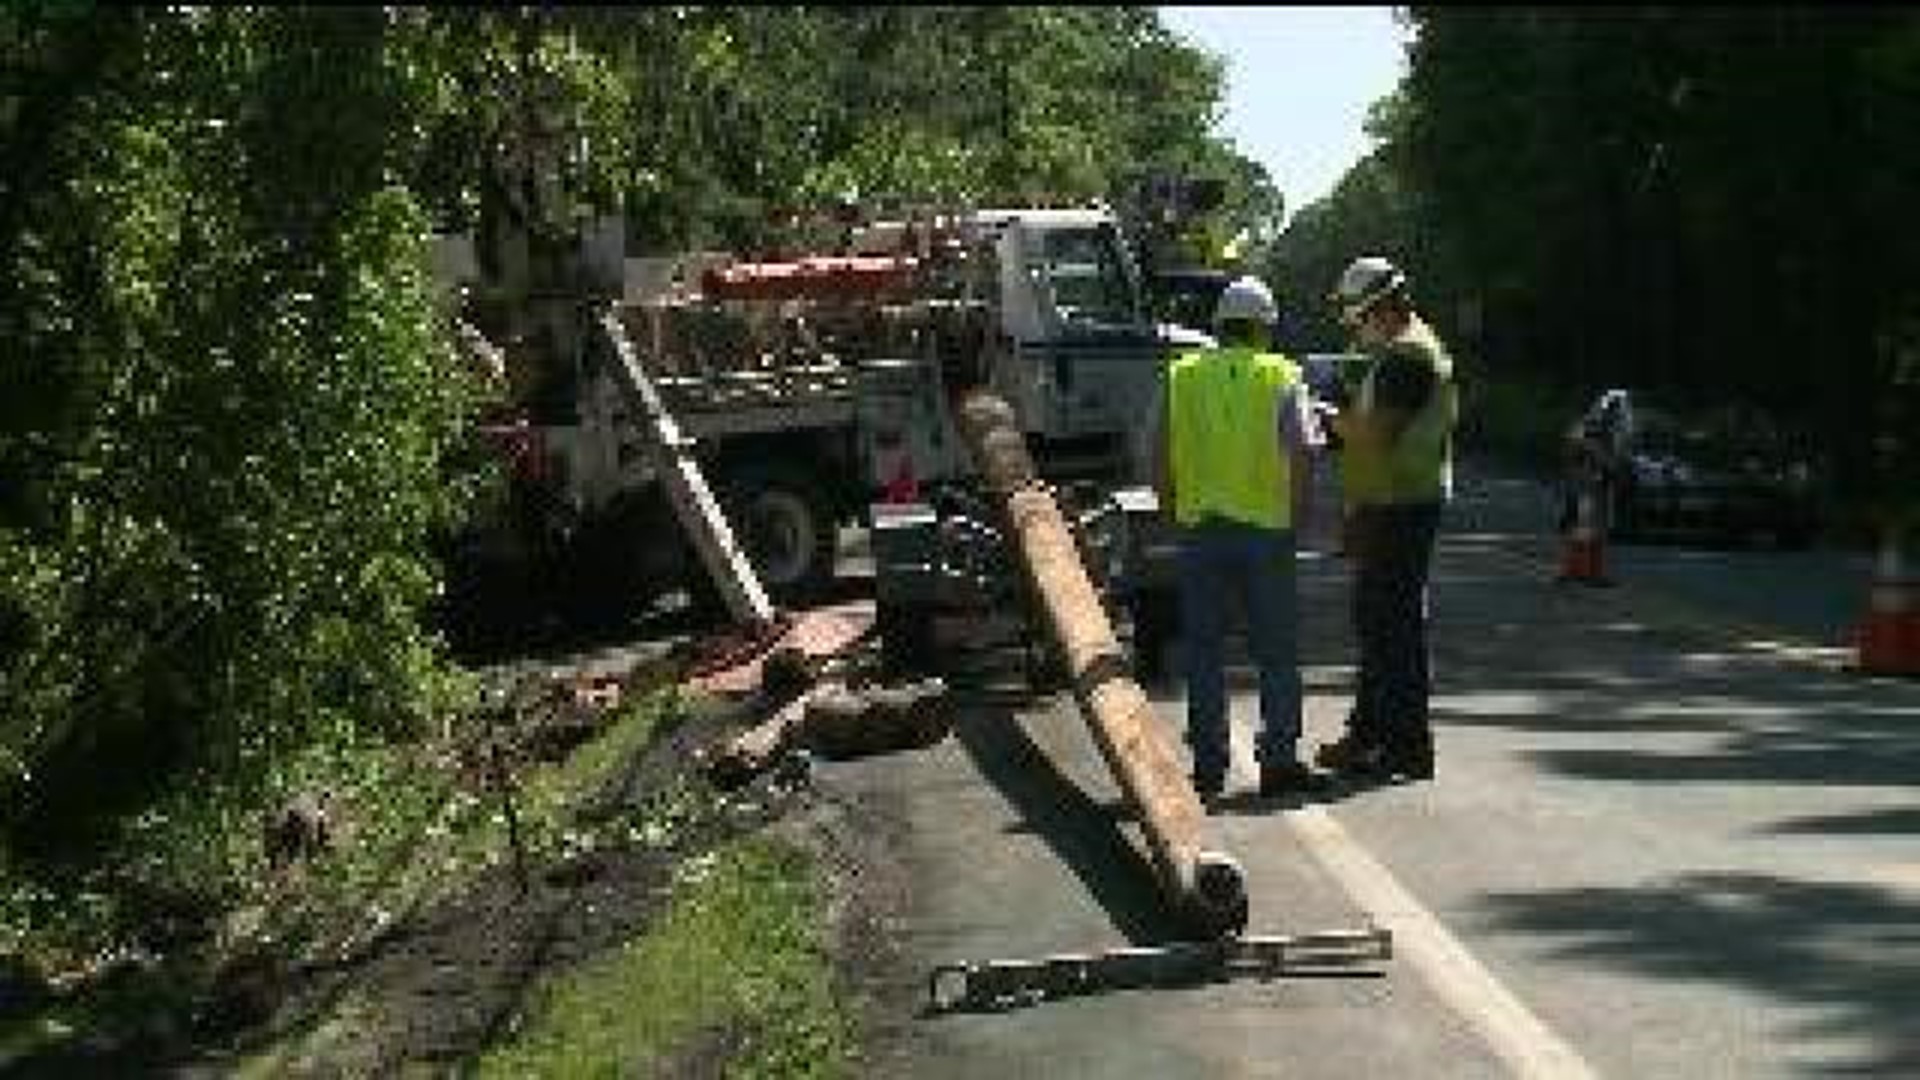 UPDATE: Crash Closes Road, Cuts Power